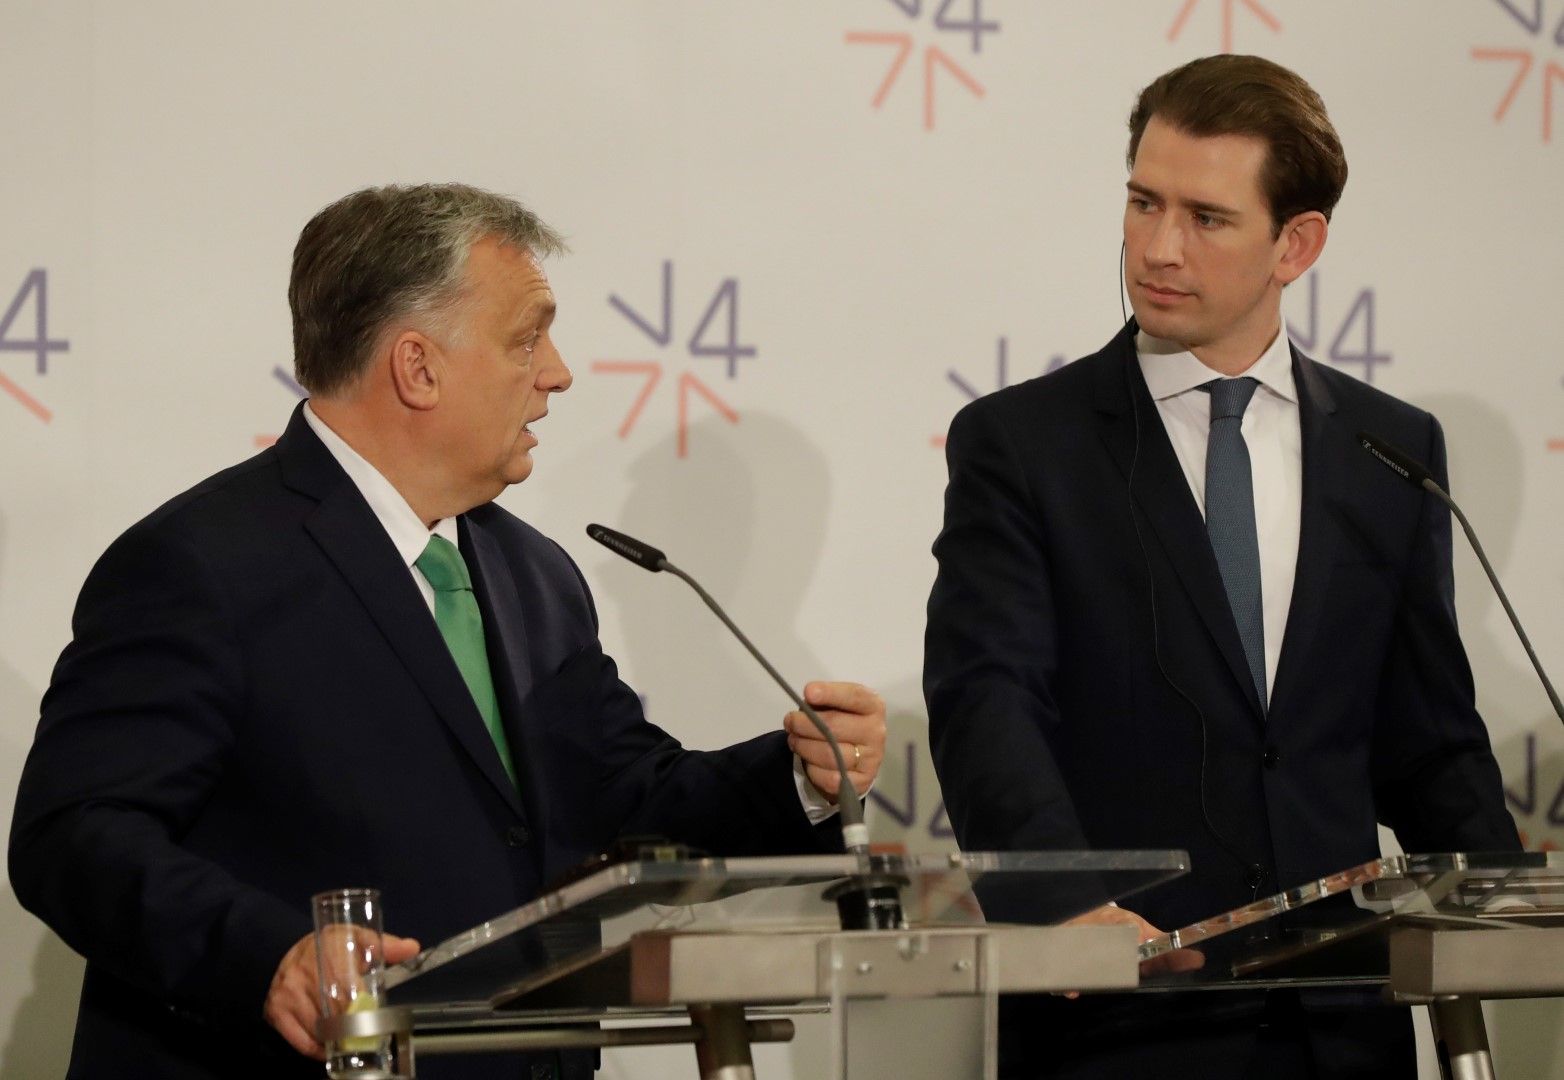 Австрийският канцлер Себастиан Курц е против страни като Унгария и Словакия да получават европейски пари за ядрена енергетика. Курц и премиерът на Унгария Виктор Орбан се срещнаха в Прага на 16 януари, където гостуваха лидерите на страните от Вишеградкста